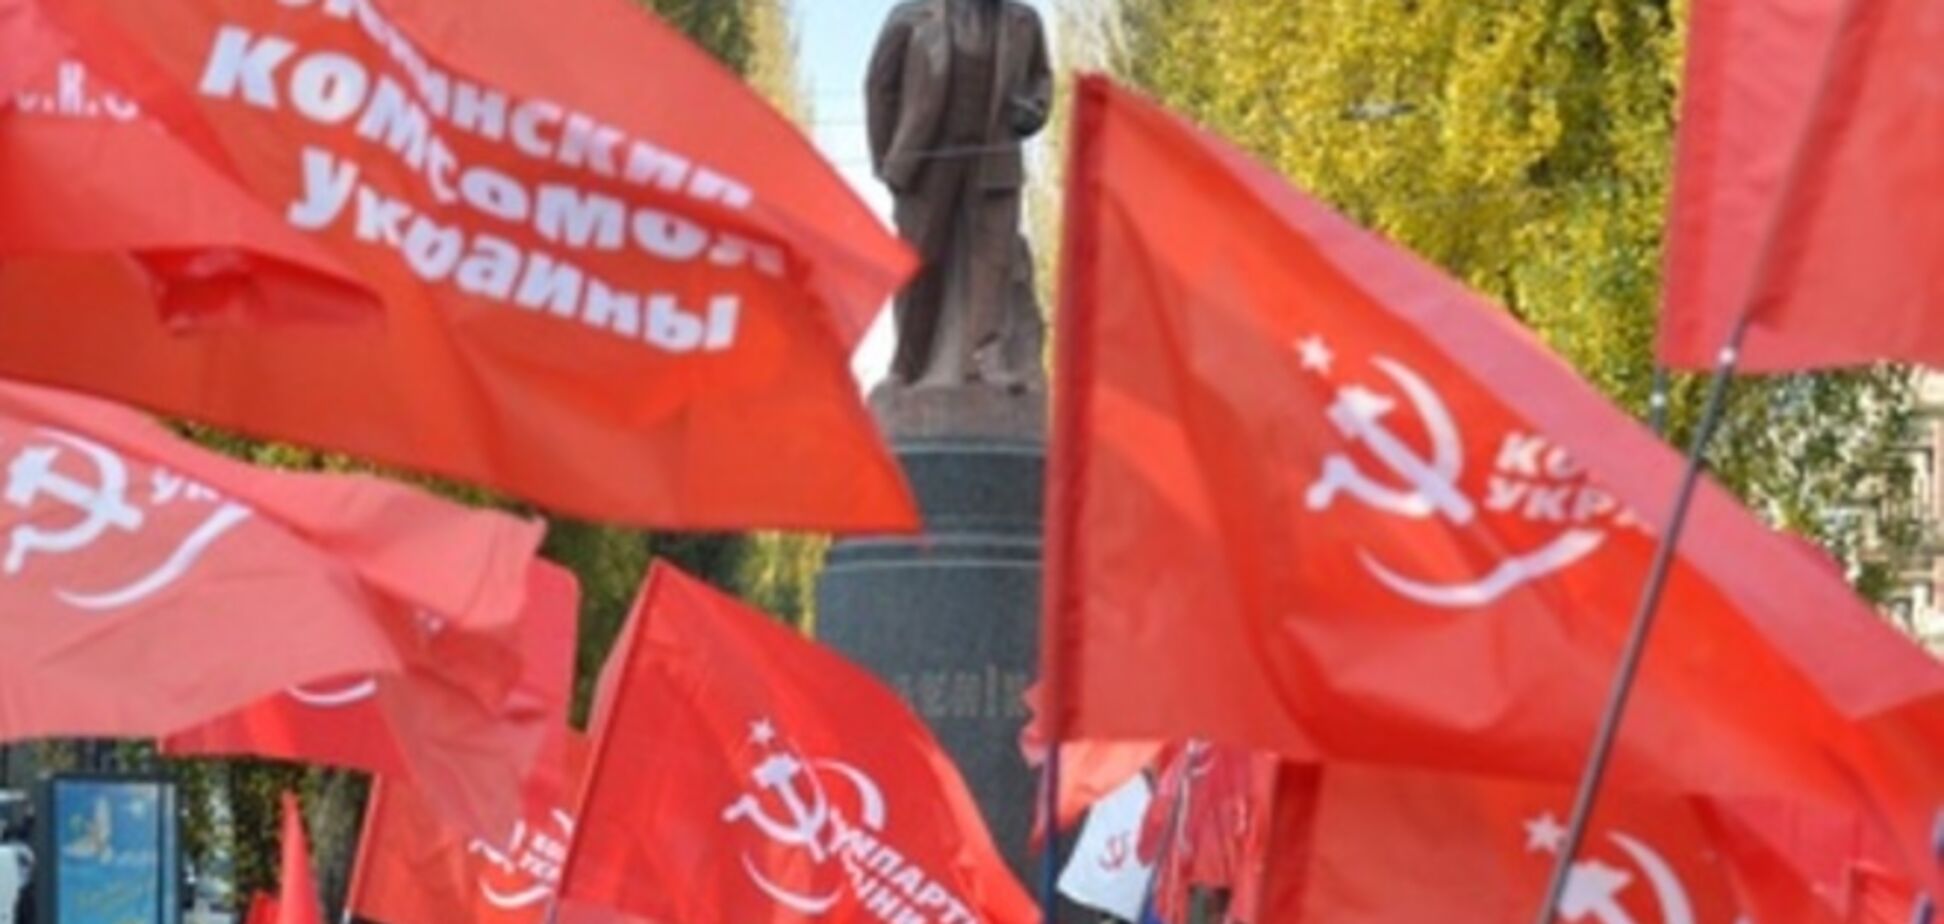 Європейські комуністи висловили об'єднаний протест щодо заборони КПУ